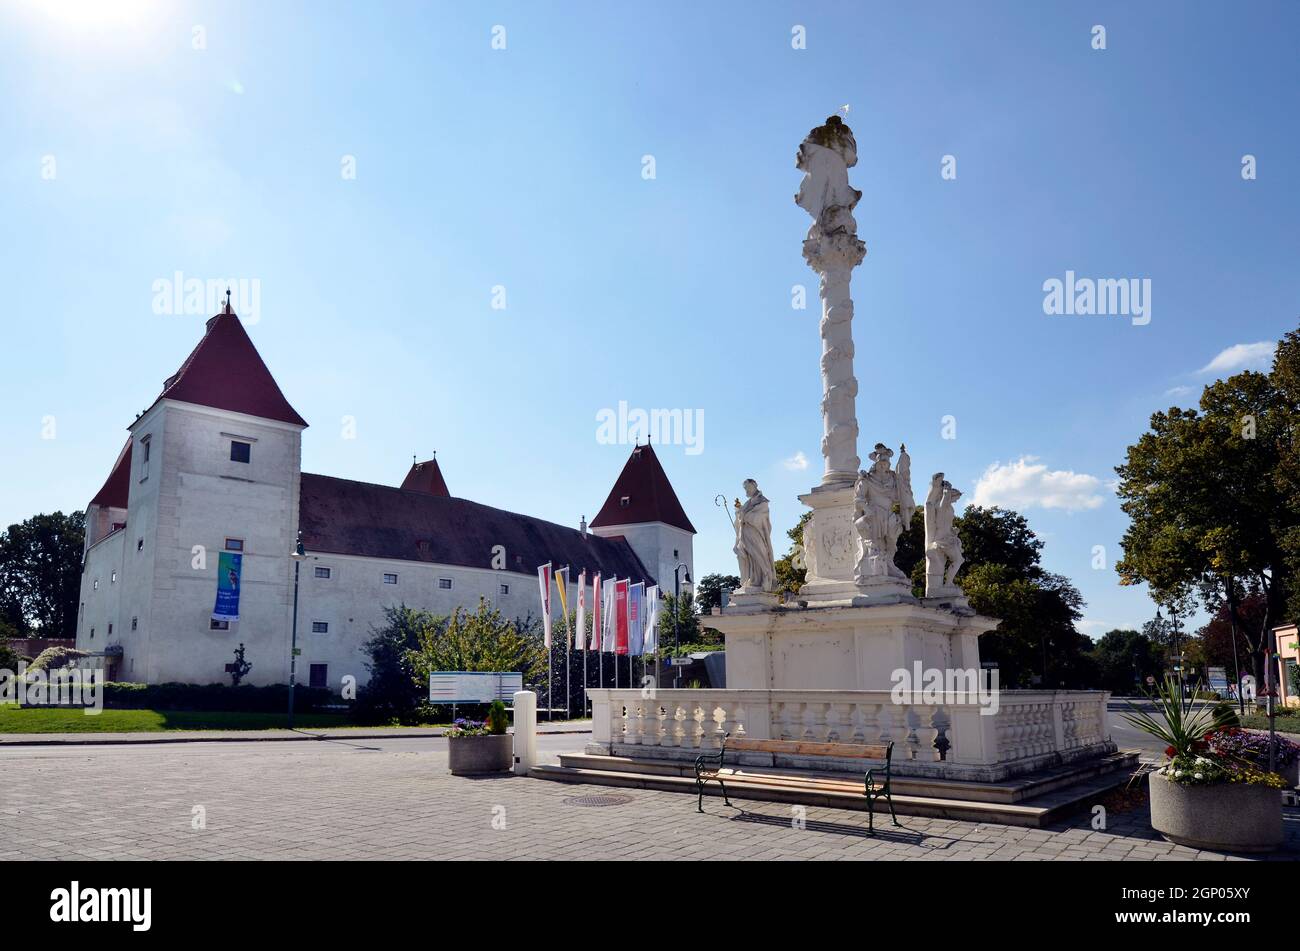 Orth an der Donau, Austria - 04 de septiembre de 2021: Columna de la Santísima Trinidad y Orth castillo en la Baja Austria, antiguo castillo mudo ahora utilizado como museo y cen Foto de stock